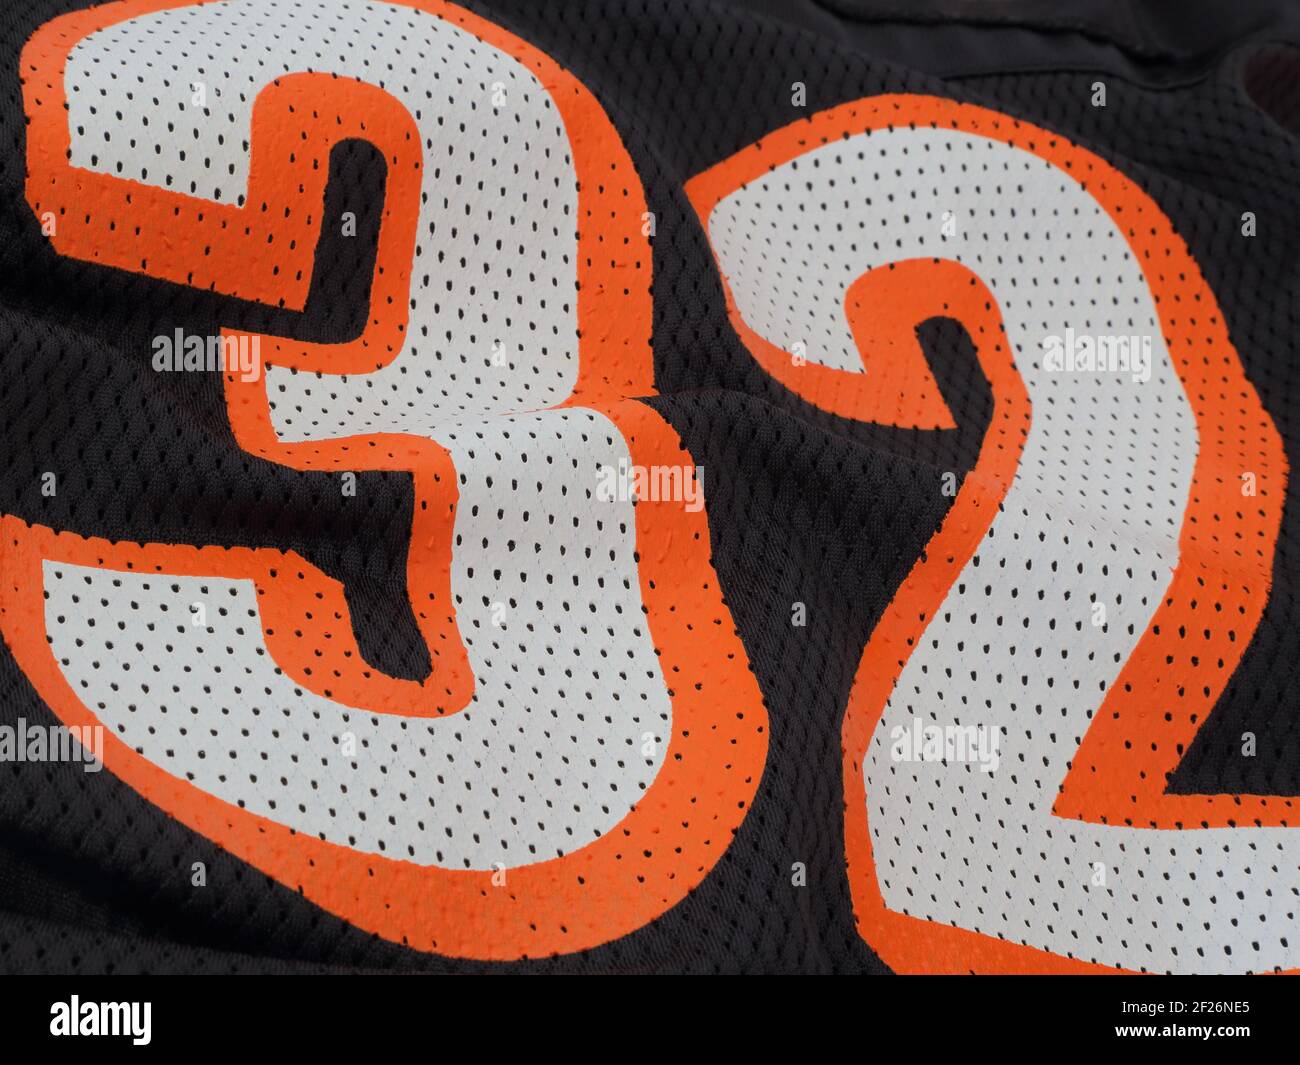 Auf einem schwarzen Mesh-Sporttrikot werden orangefarbene und weiße Zahlen mit 32 angezeigt. Stockfoto